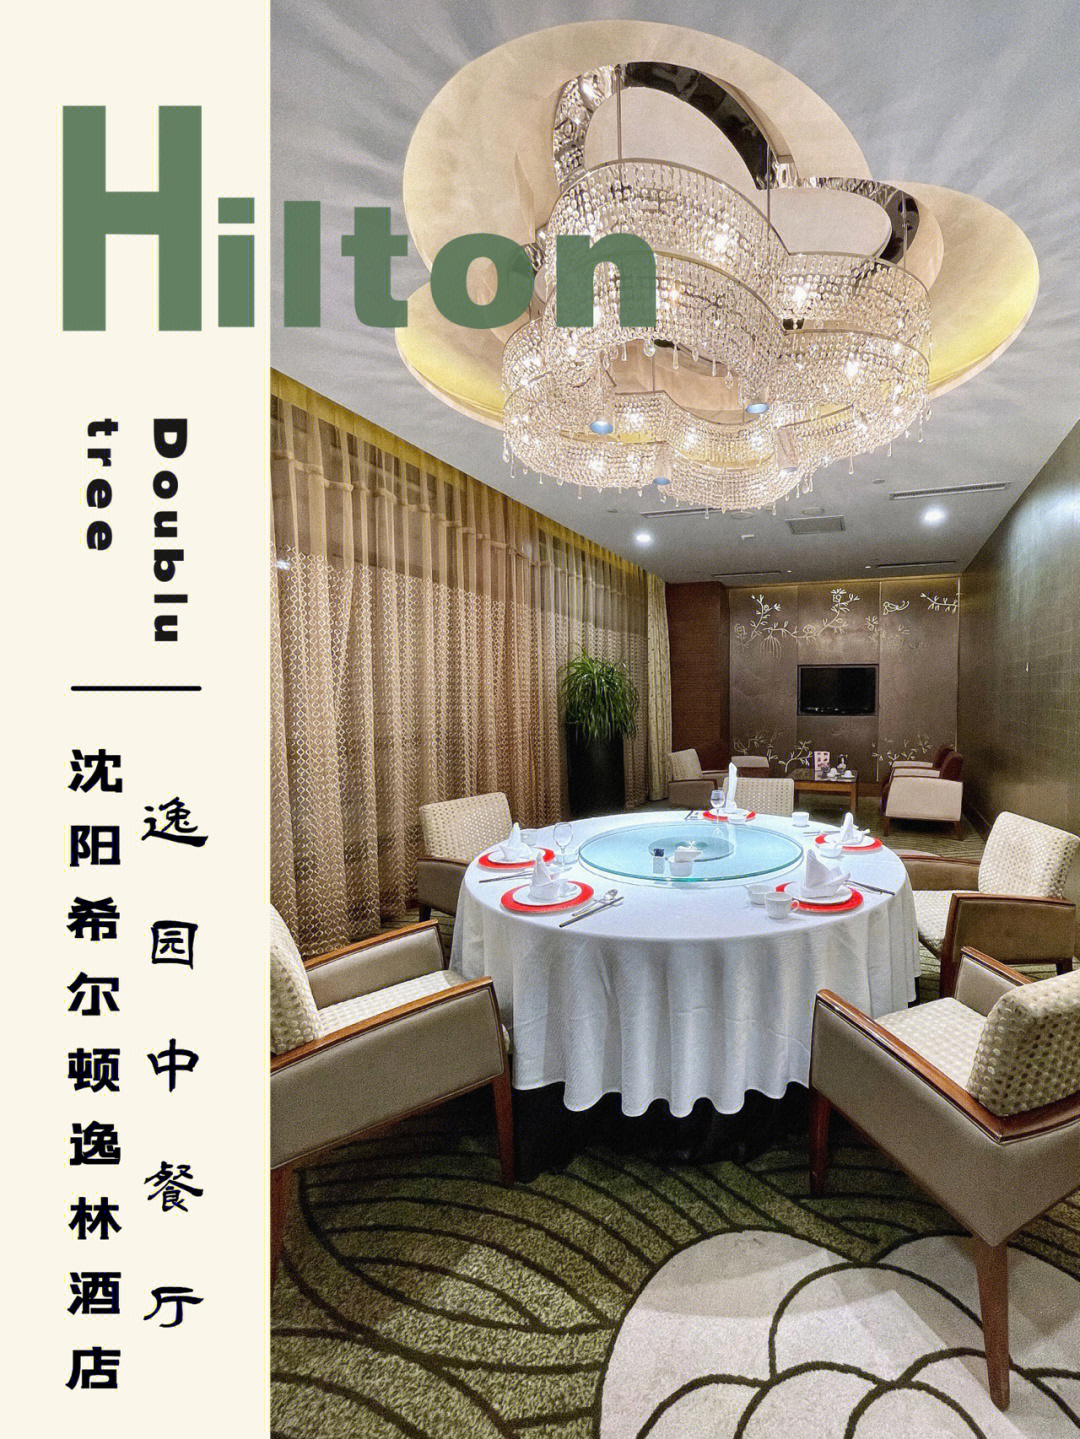 沈阳希尔顿酒店地址图片